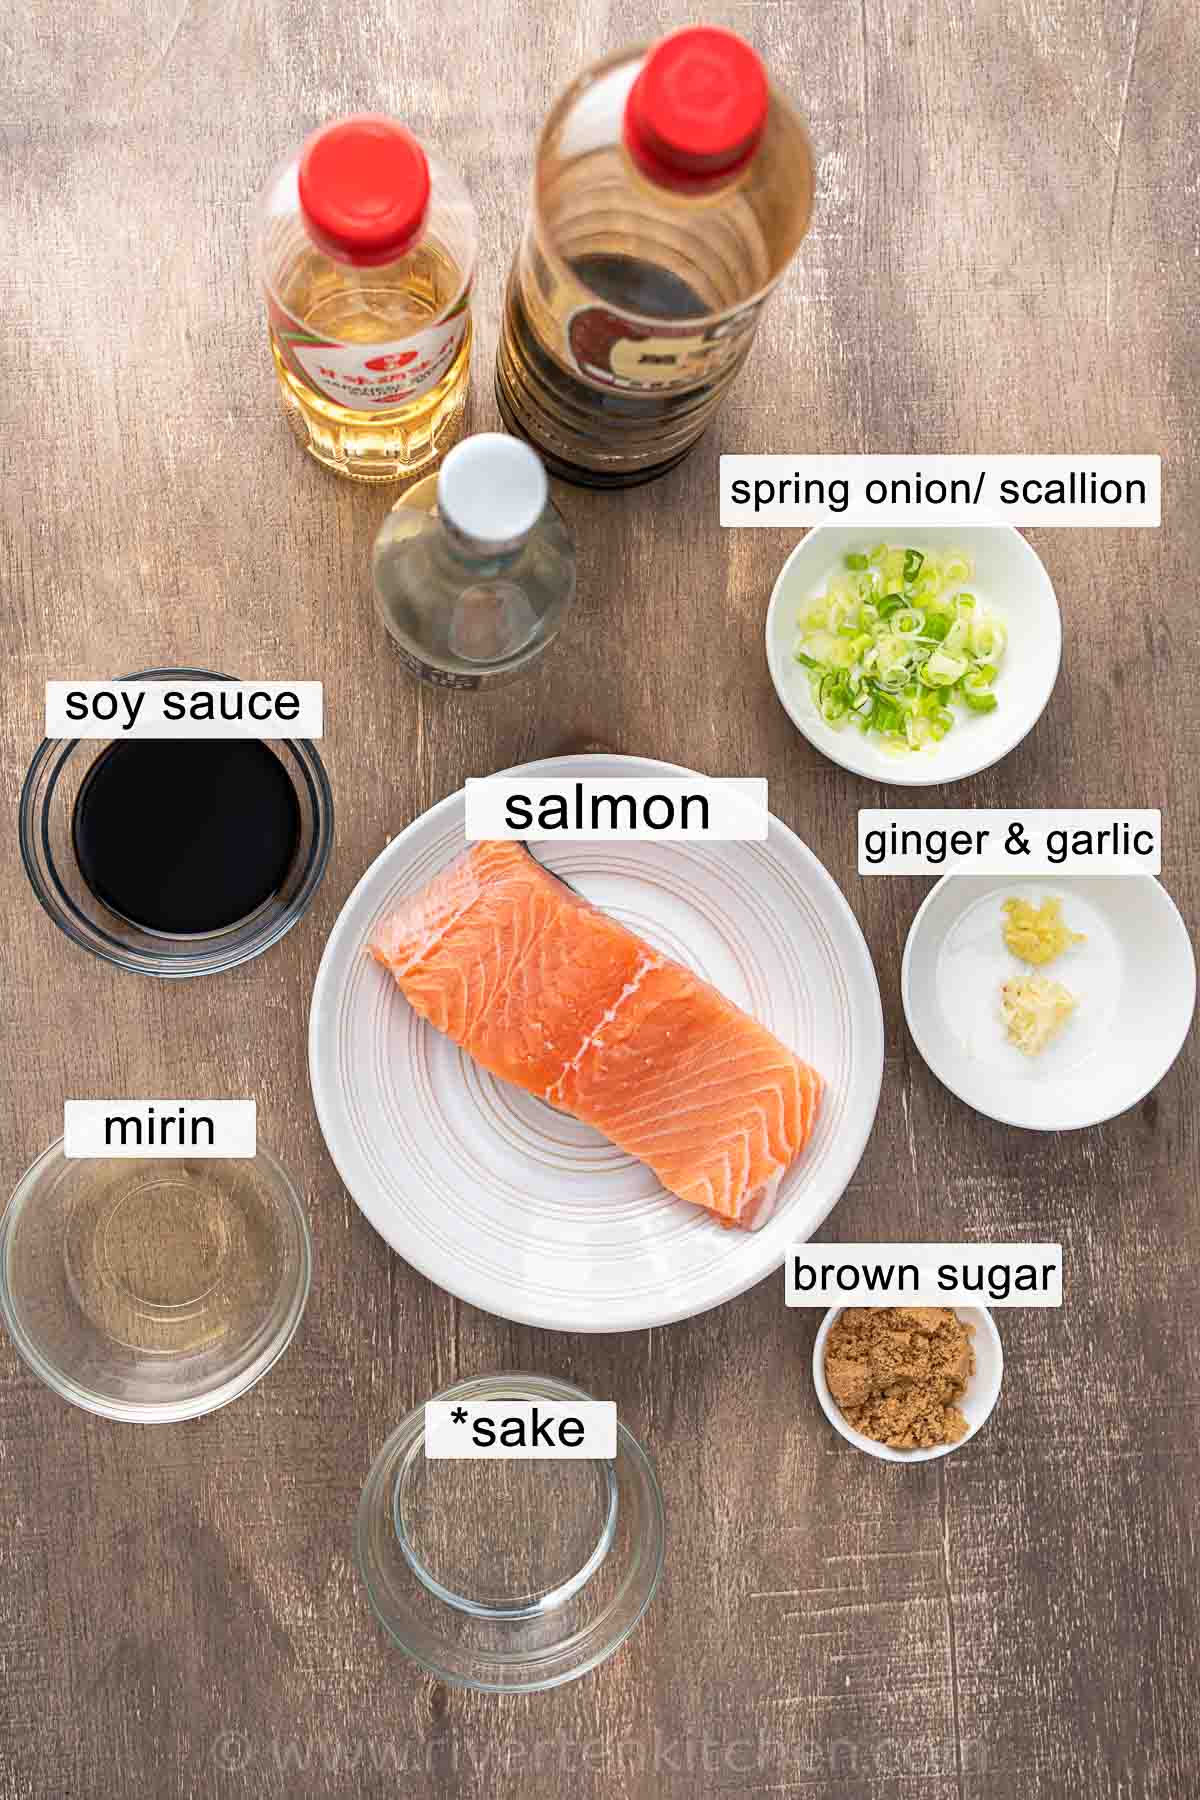 teriyaki salmon ingredients - soy sauce, mirin, sake, brown sugar, ginger, and garlic.